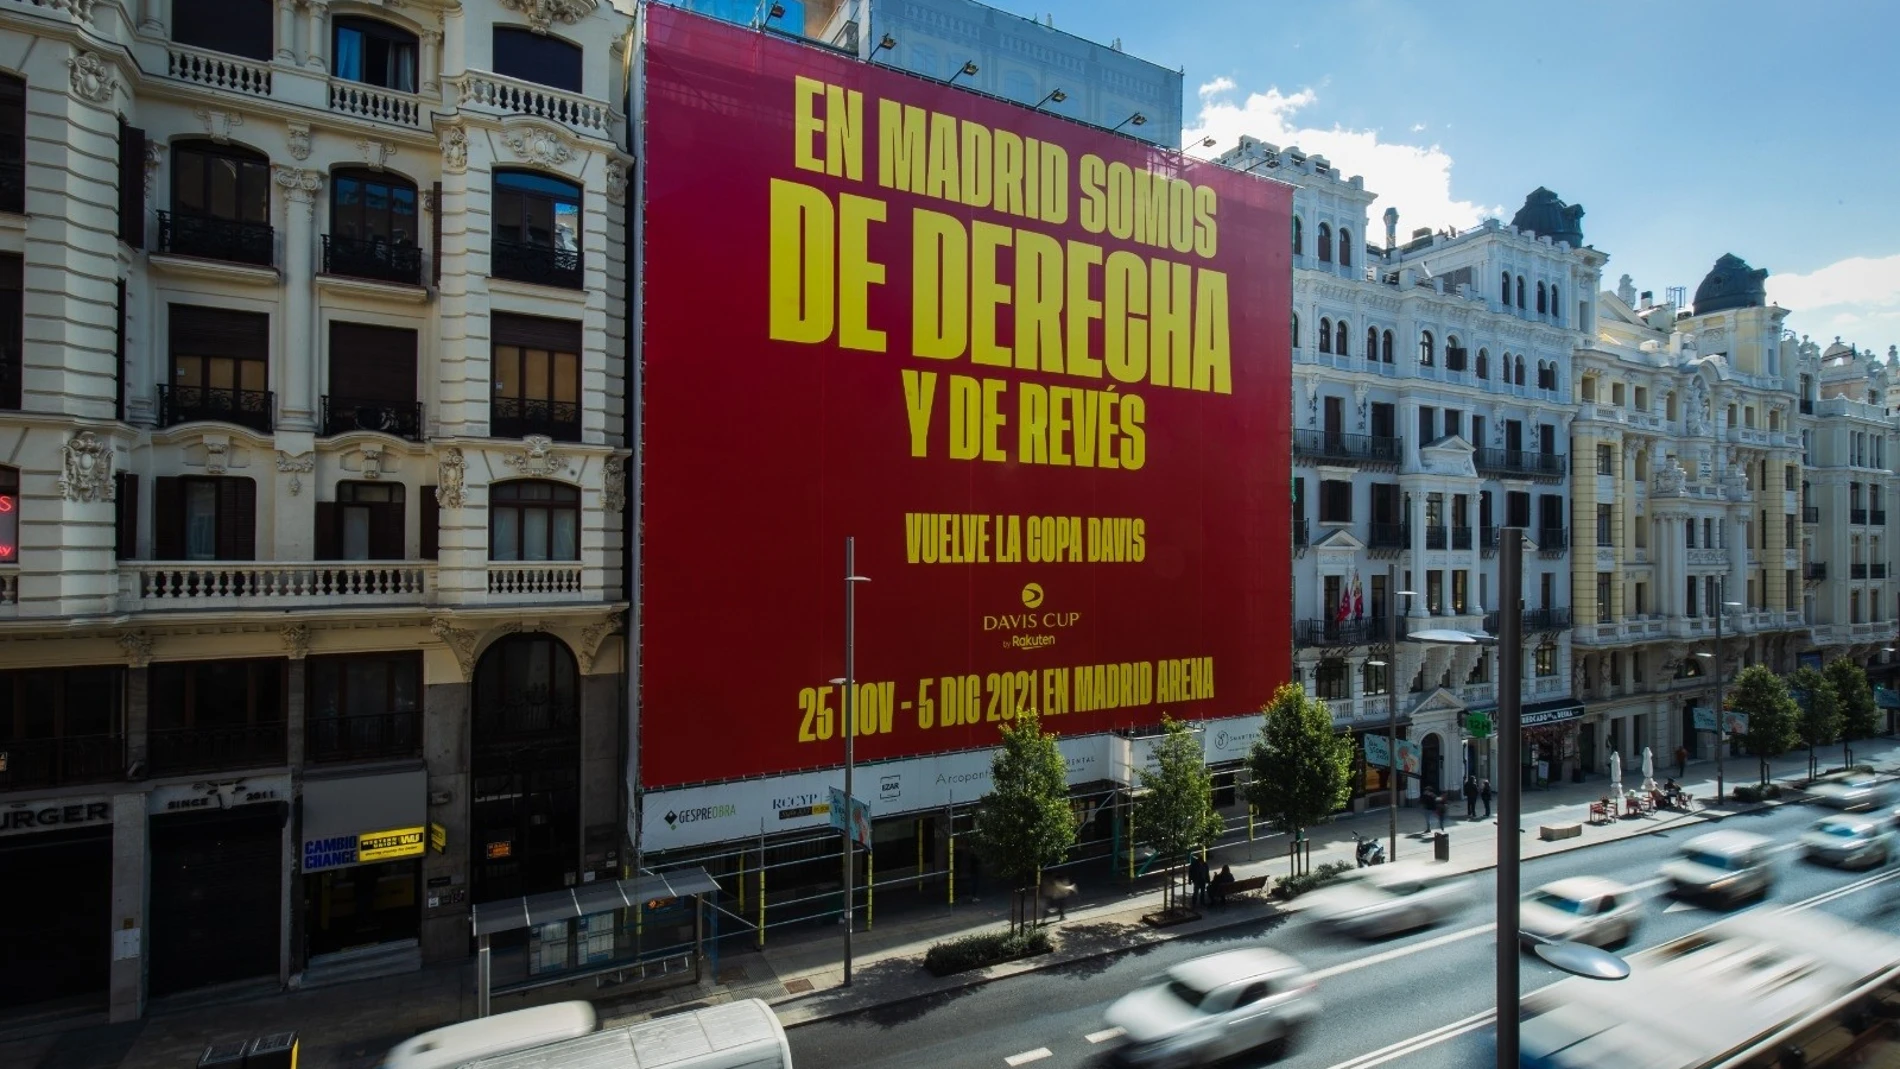 Lona promocional de la Copa Davis en Madrid